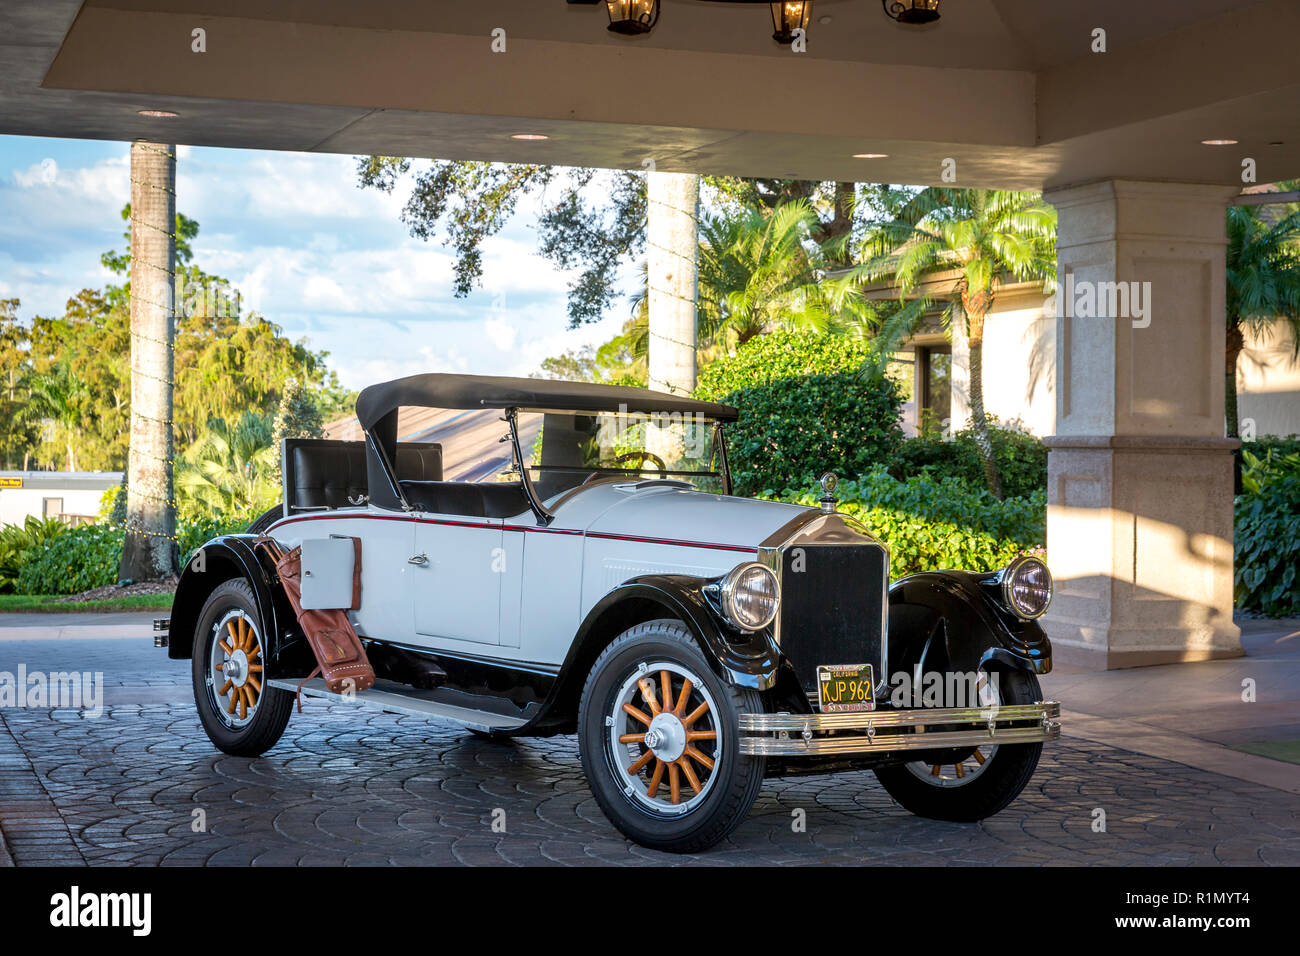 1926 Ford Modello T Roadster a quaglie Creek Country Club, Naples, Florida, Stati Uniti d'America Foto Stock